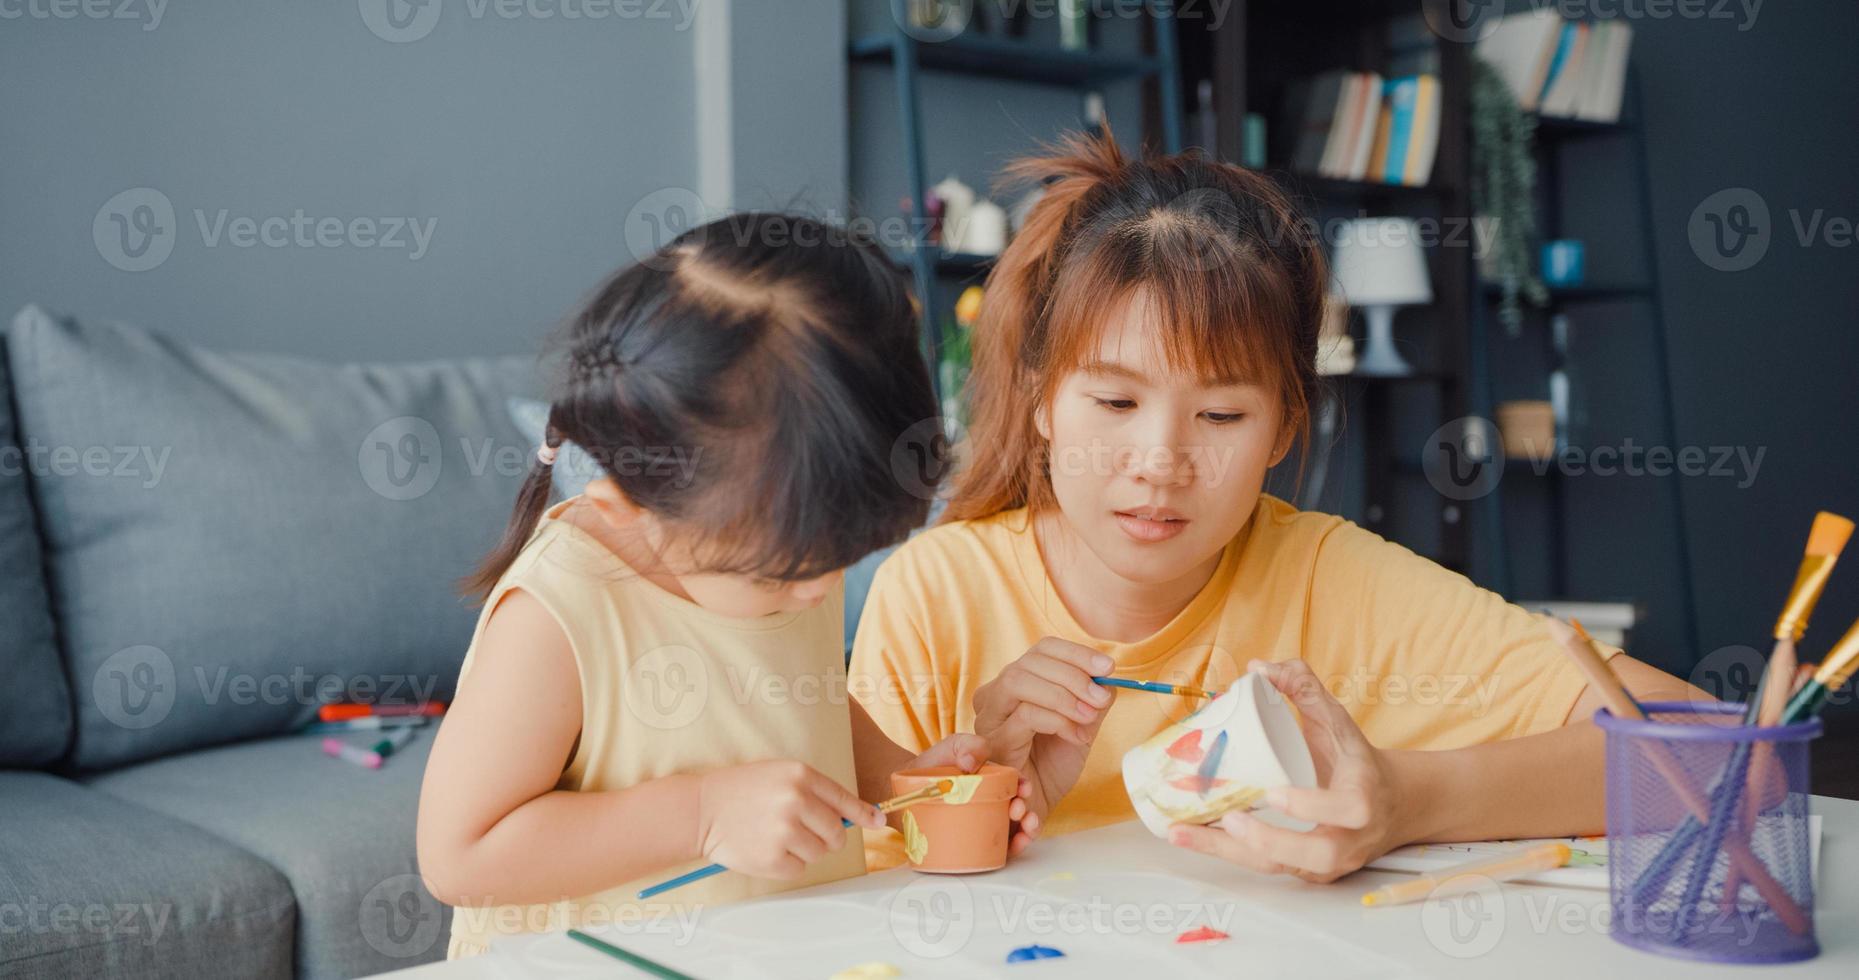 gelukkige vrolijke azië familie moeder leert peuter meisje verf keramische pot plezier ontspannen op tafel in de woonkamer thuis. tijd samen doorbrengen, sociale afstand, quarantaine voor coronaviruspreventie. foto